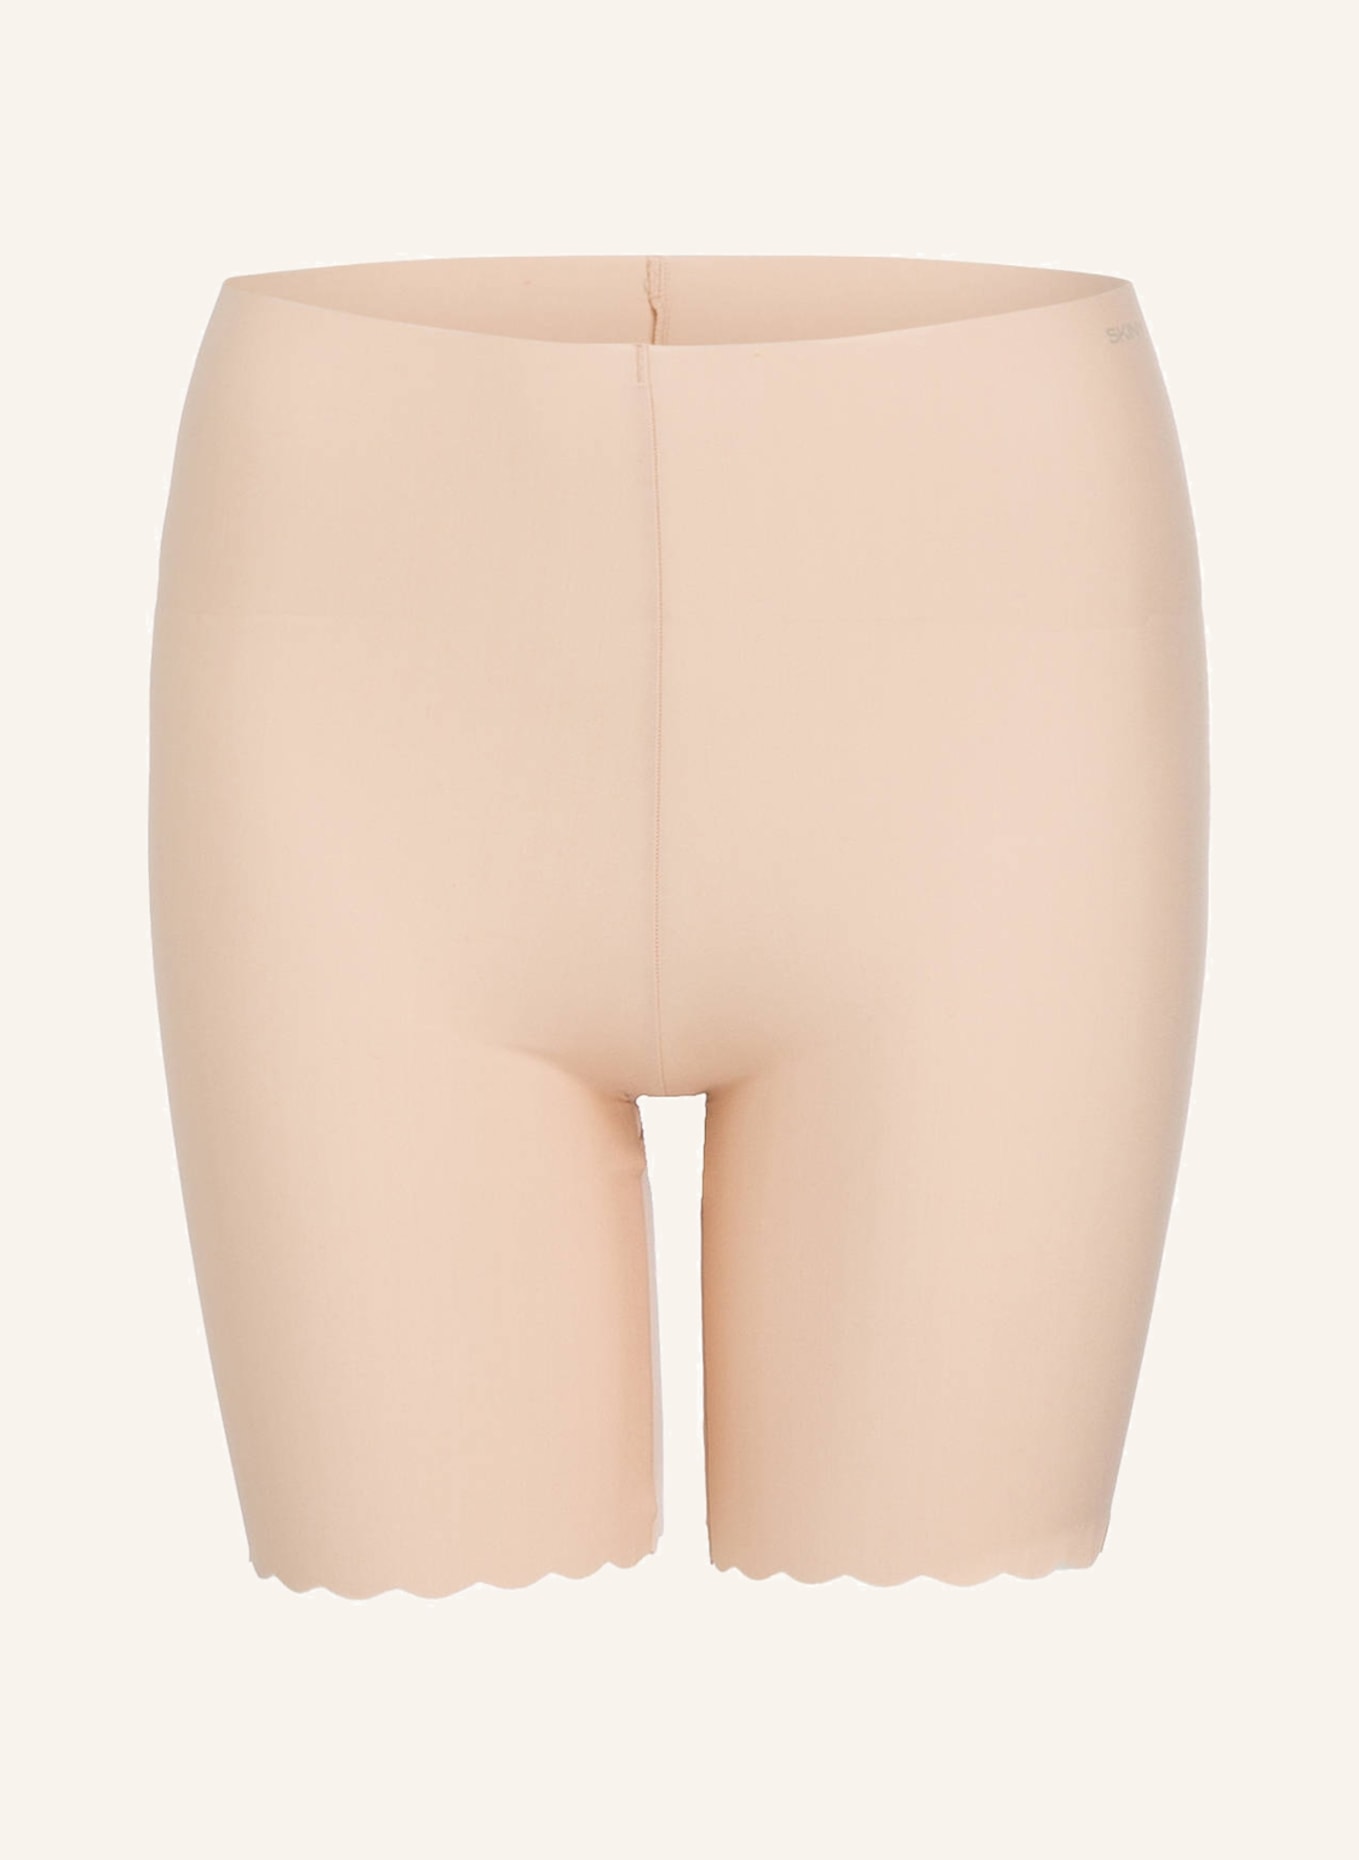 Skiny Shorts MICRO LOVERS, Farbe: NUDE (Bild 1)